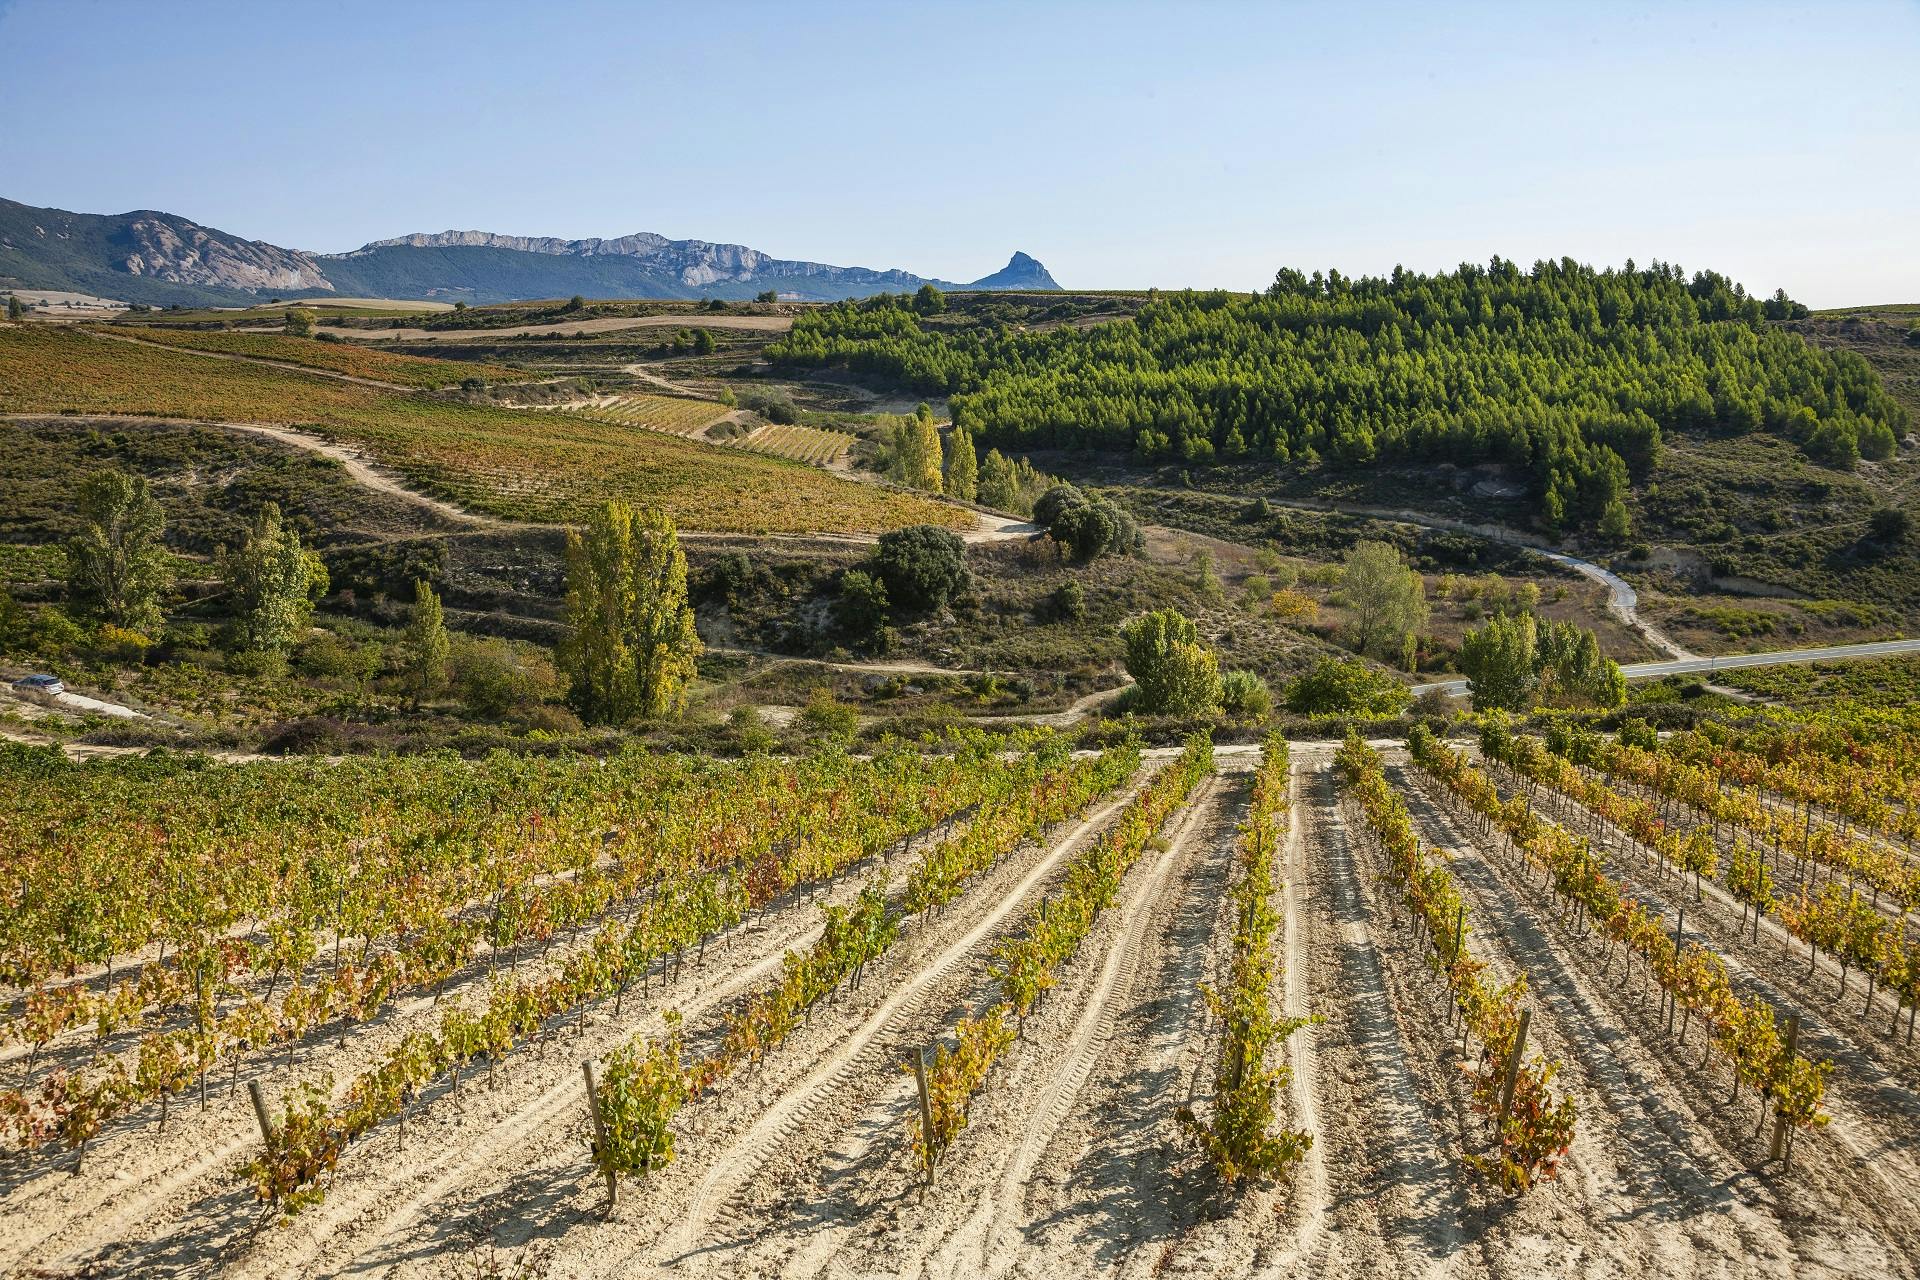 Bezoek aan twee wijnhuizen in La Rioja met pintxos uit Bilbao